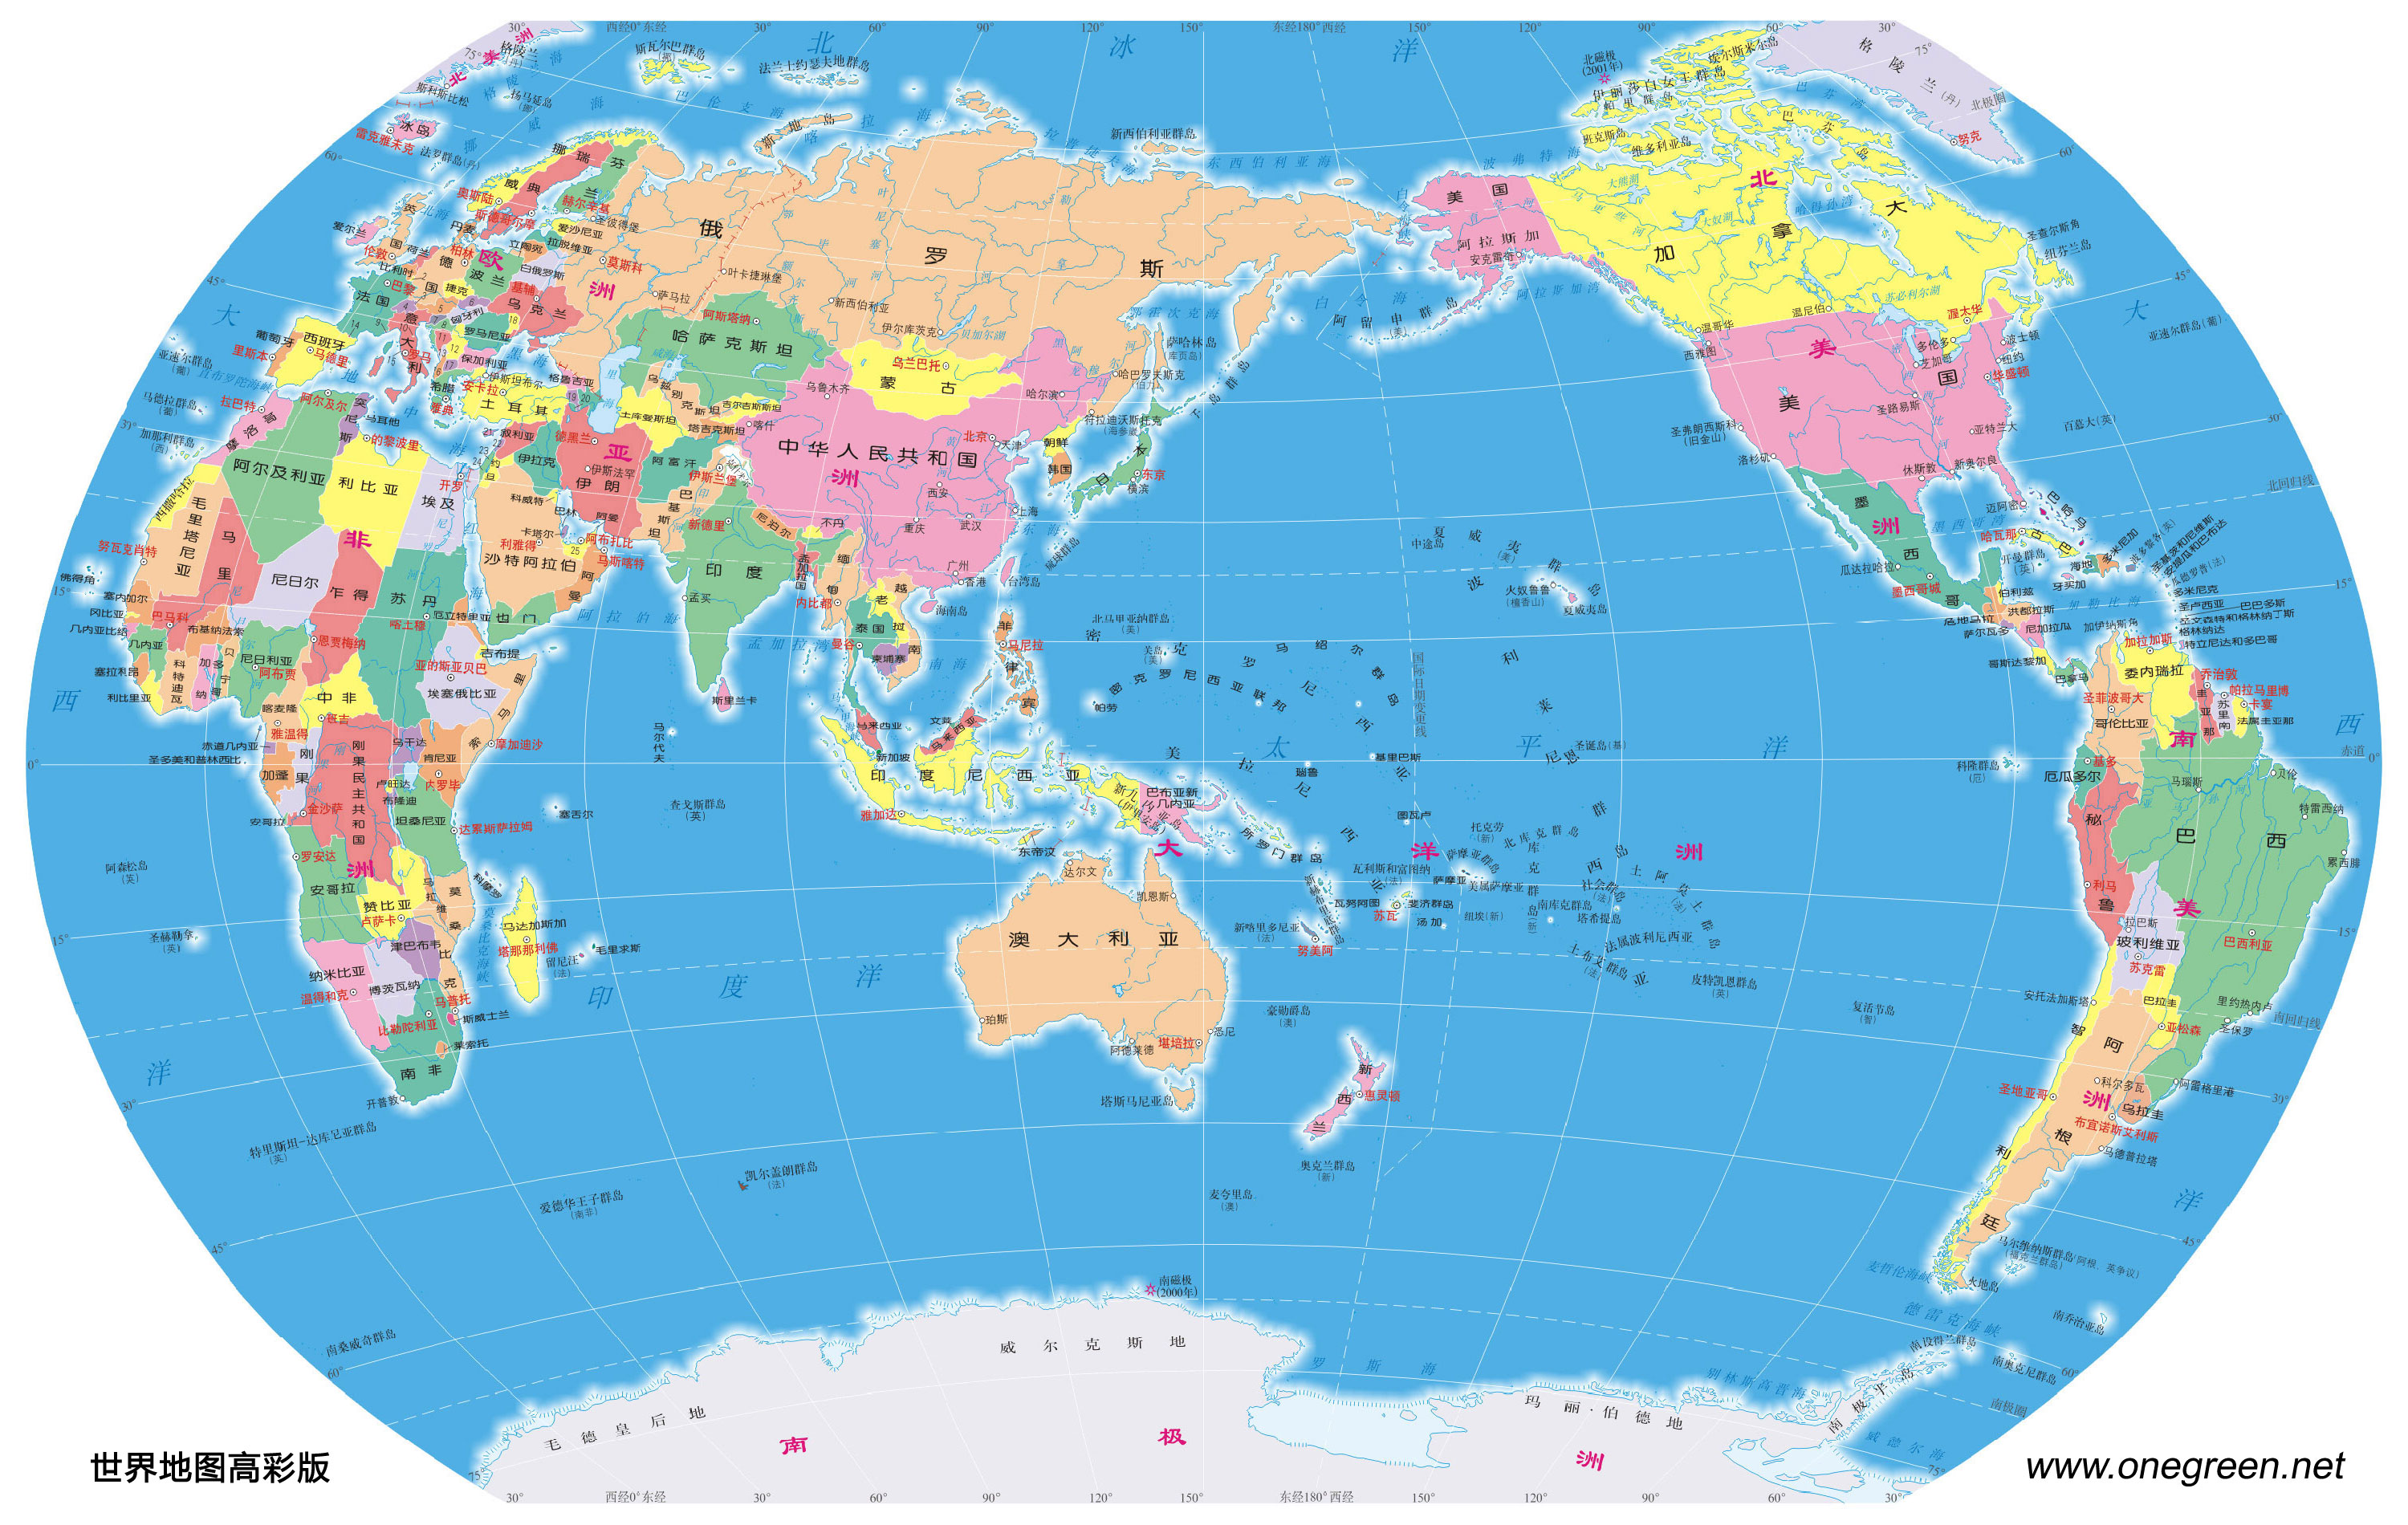 世界地图 世界地图中文版 世界地图高清版全图